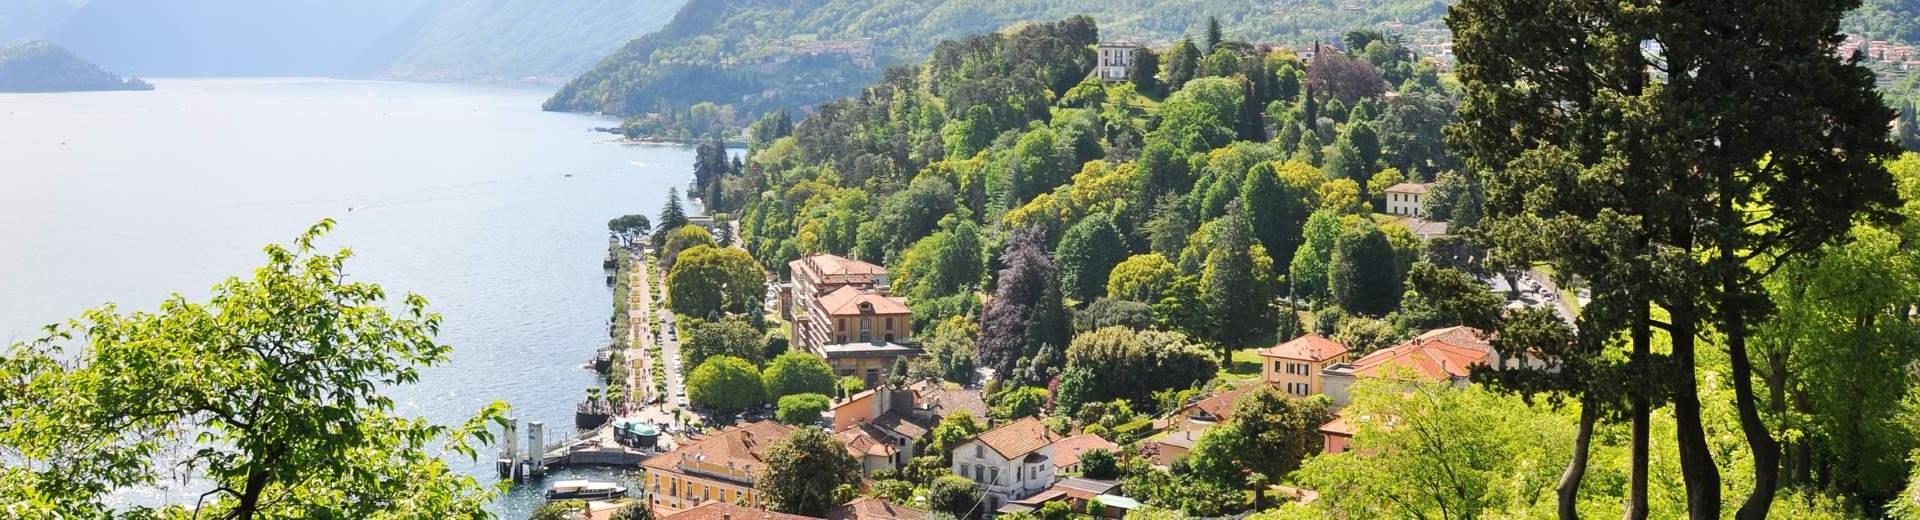 Ferienwohnungen & Ferienhäuser für Urlaub in der Lombardei - Casamundo